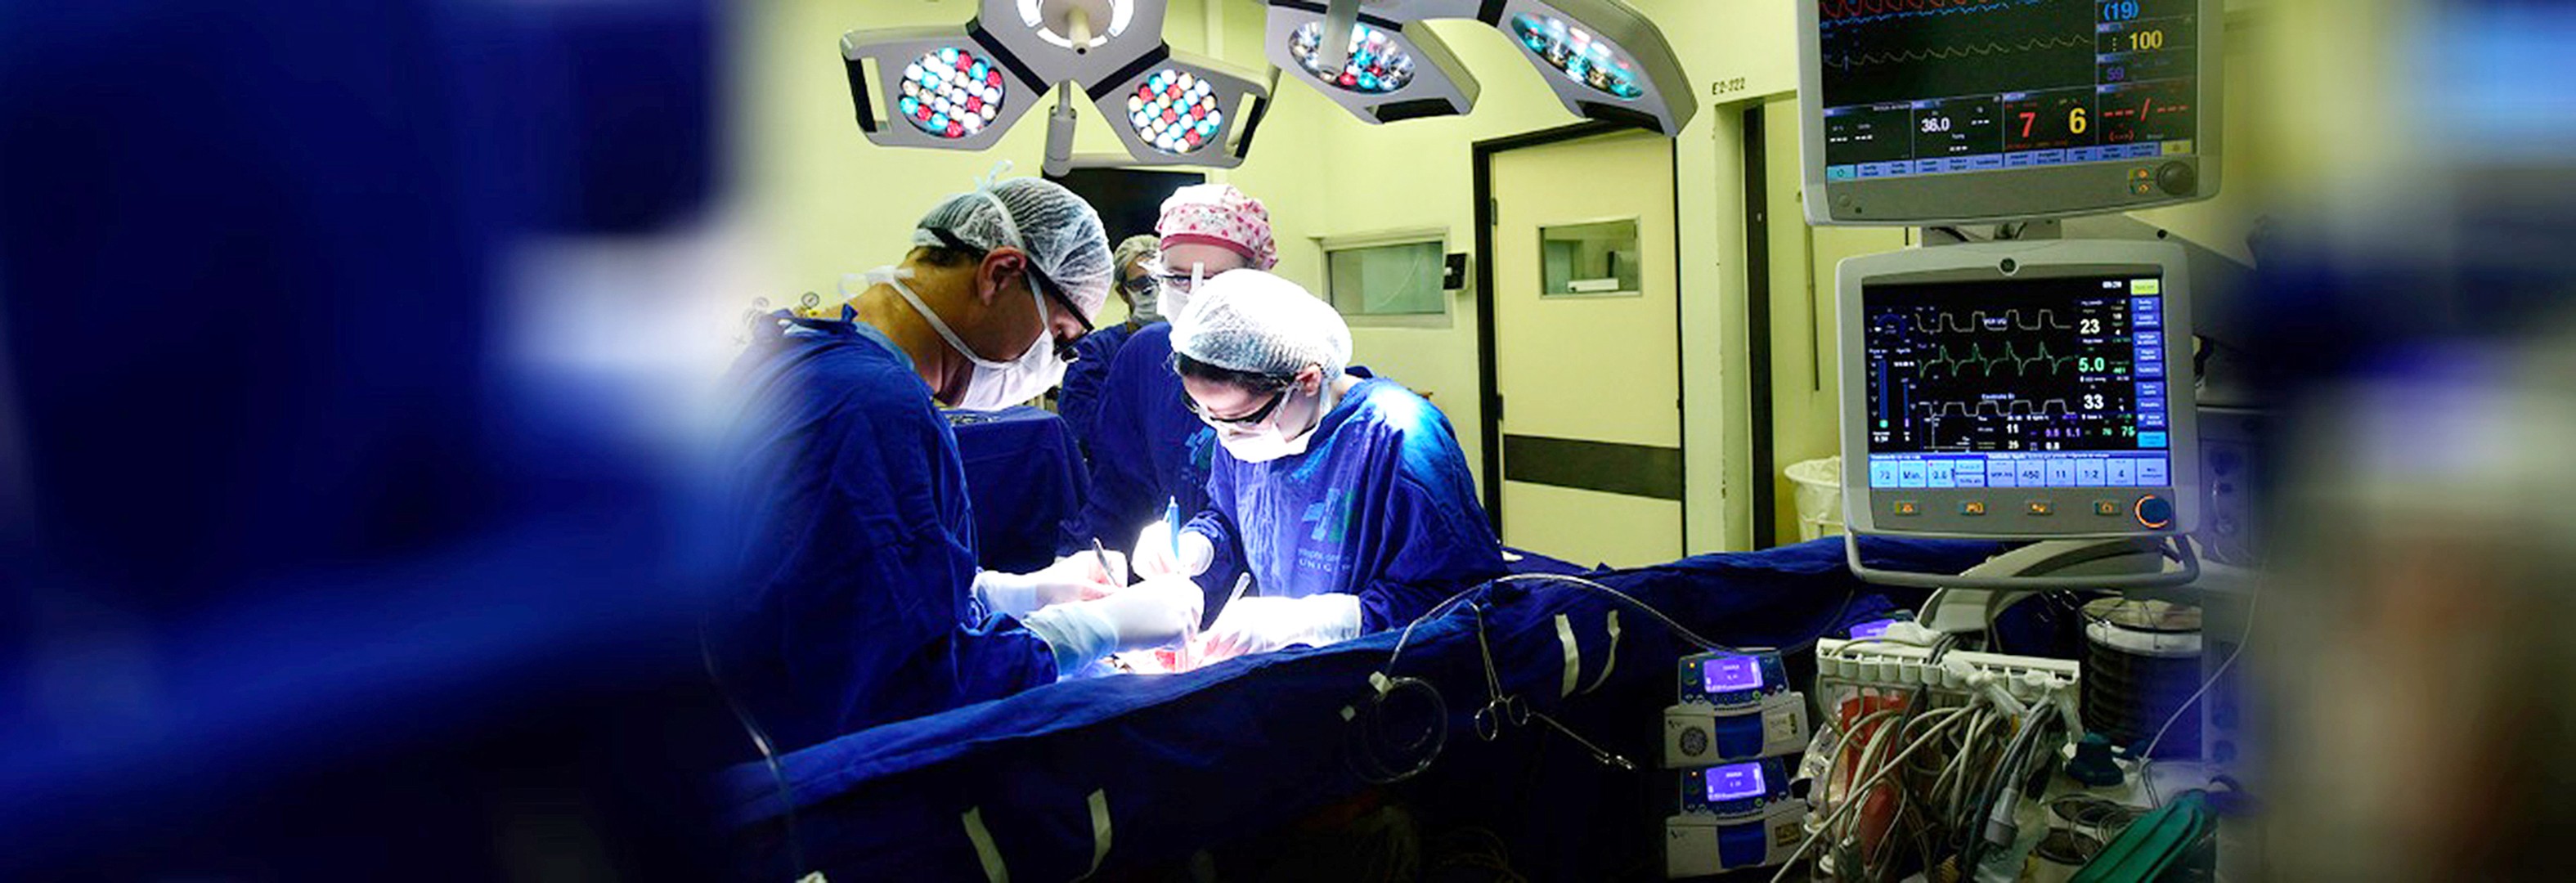 HC da Unicamp deve deslocar médicos para realizar cirurgias eletivas na região